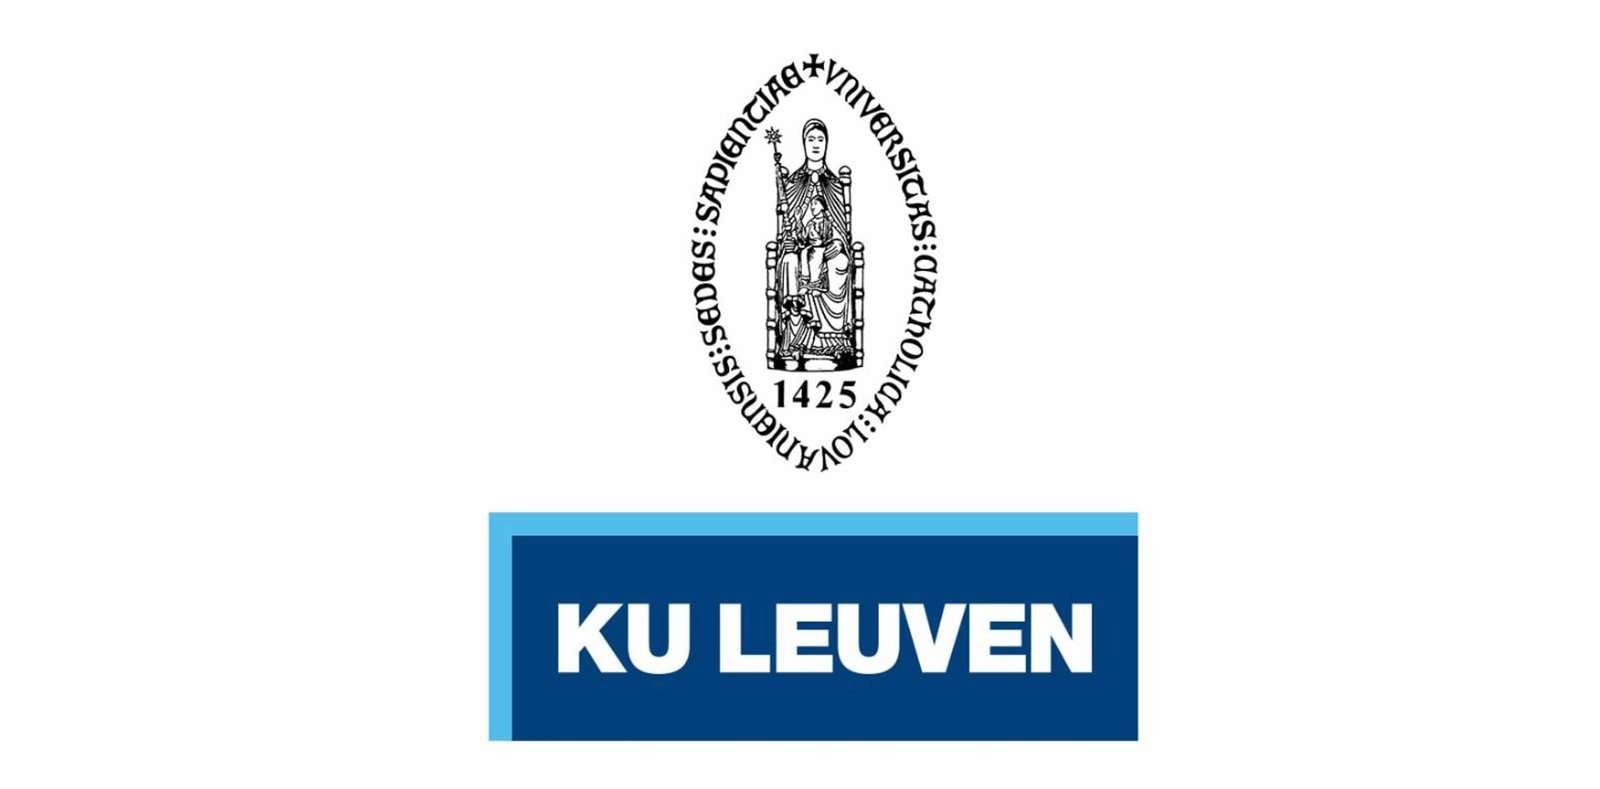 Fully Funded PhD Programs at KU Leuven